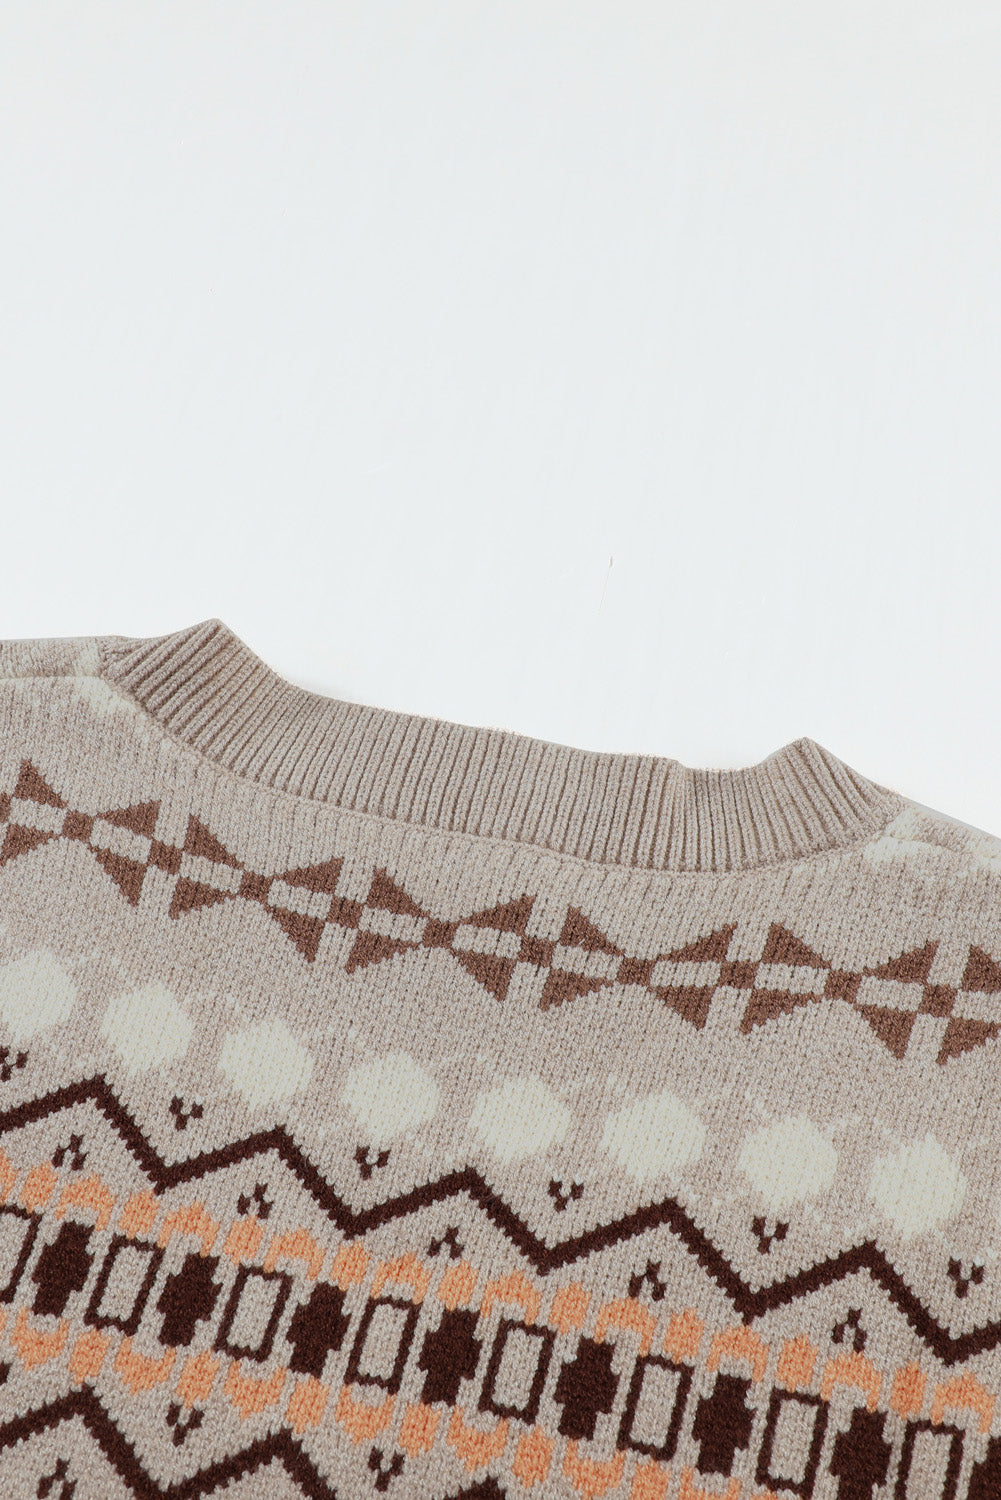 Women's Khaki Tribal Print V Neck Knitted Sweater Vest